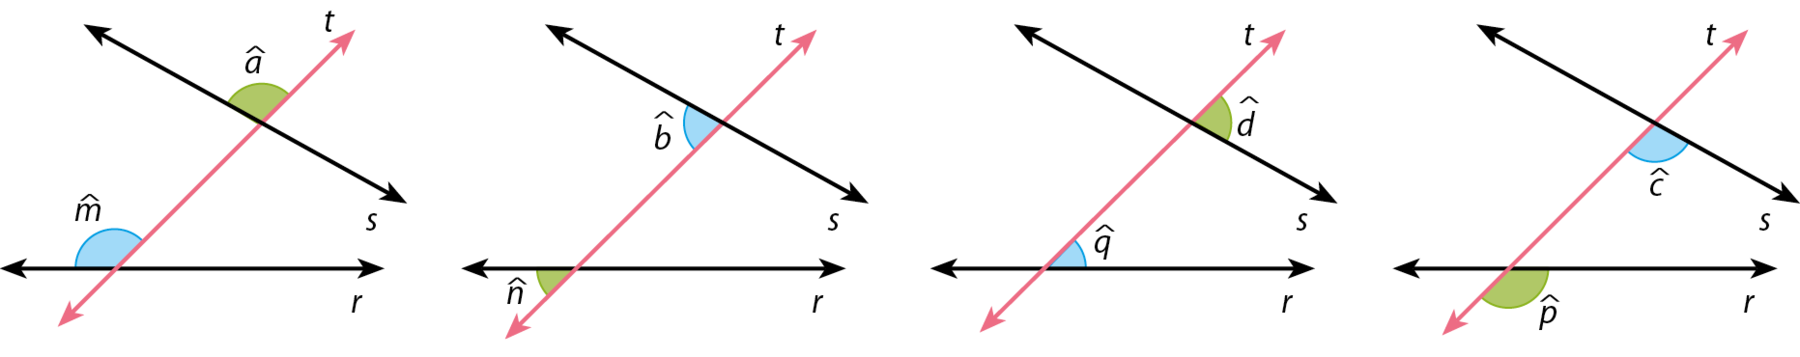 Ilustração. Reta r na horizontal e reta s inclinada para baixo. Sobre elas, uma reta t (reta transversal), com destaque para: o ângulo a, na parte superior esquerda (entre as retas t e s) e o ângulo m, na parte superior esquerda (entre as retas t e r).    Ilustração. Reta r na horizontal e reta s inclinada para baixo. Sobre elas, uma reta t (reta transversal), com destaque para: o ângulo b, na parte inferior esquerda (entre as retas t e s) e o ângulo n, na parte inferior esquerda (entre as retas t e r).   Ilustração. Reta r na horizontal e reta s inclinada para baixo. Sobre elas, uma reta t (reta transversal), com destaque para: o ângulo d, na parte superior direita (entre as retas t e s) e o ângulo q, na parte superior direita (entre as retas t e r).   Ilustração. Reta r na horizontal e reta s inclinada para baixo. Sobre elas, uma reta t (reta transversal), com destaque para: o ângulo c, na parte inferior direita (entre as retas t e s) e o ângulo p, na parte superior direita (entre as retas t e r).